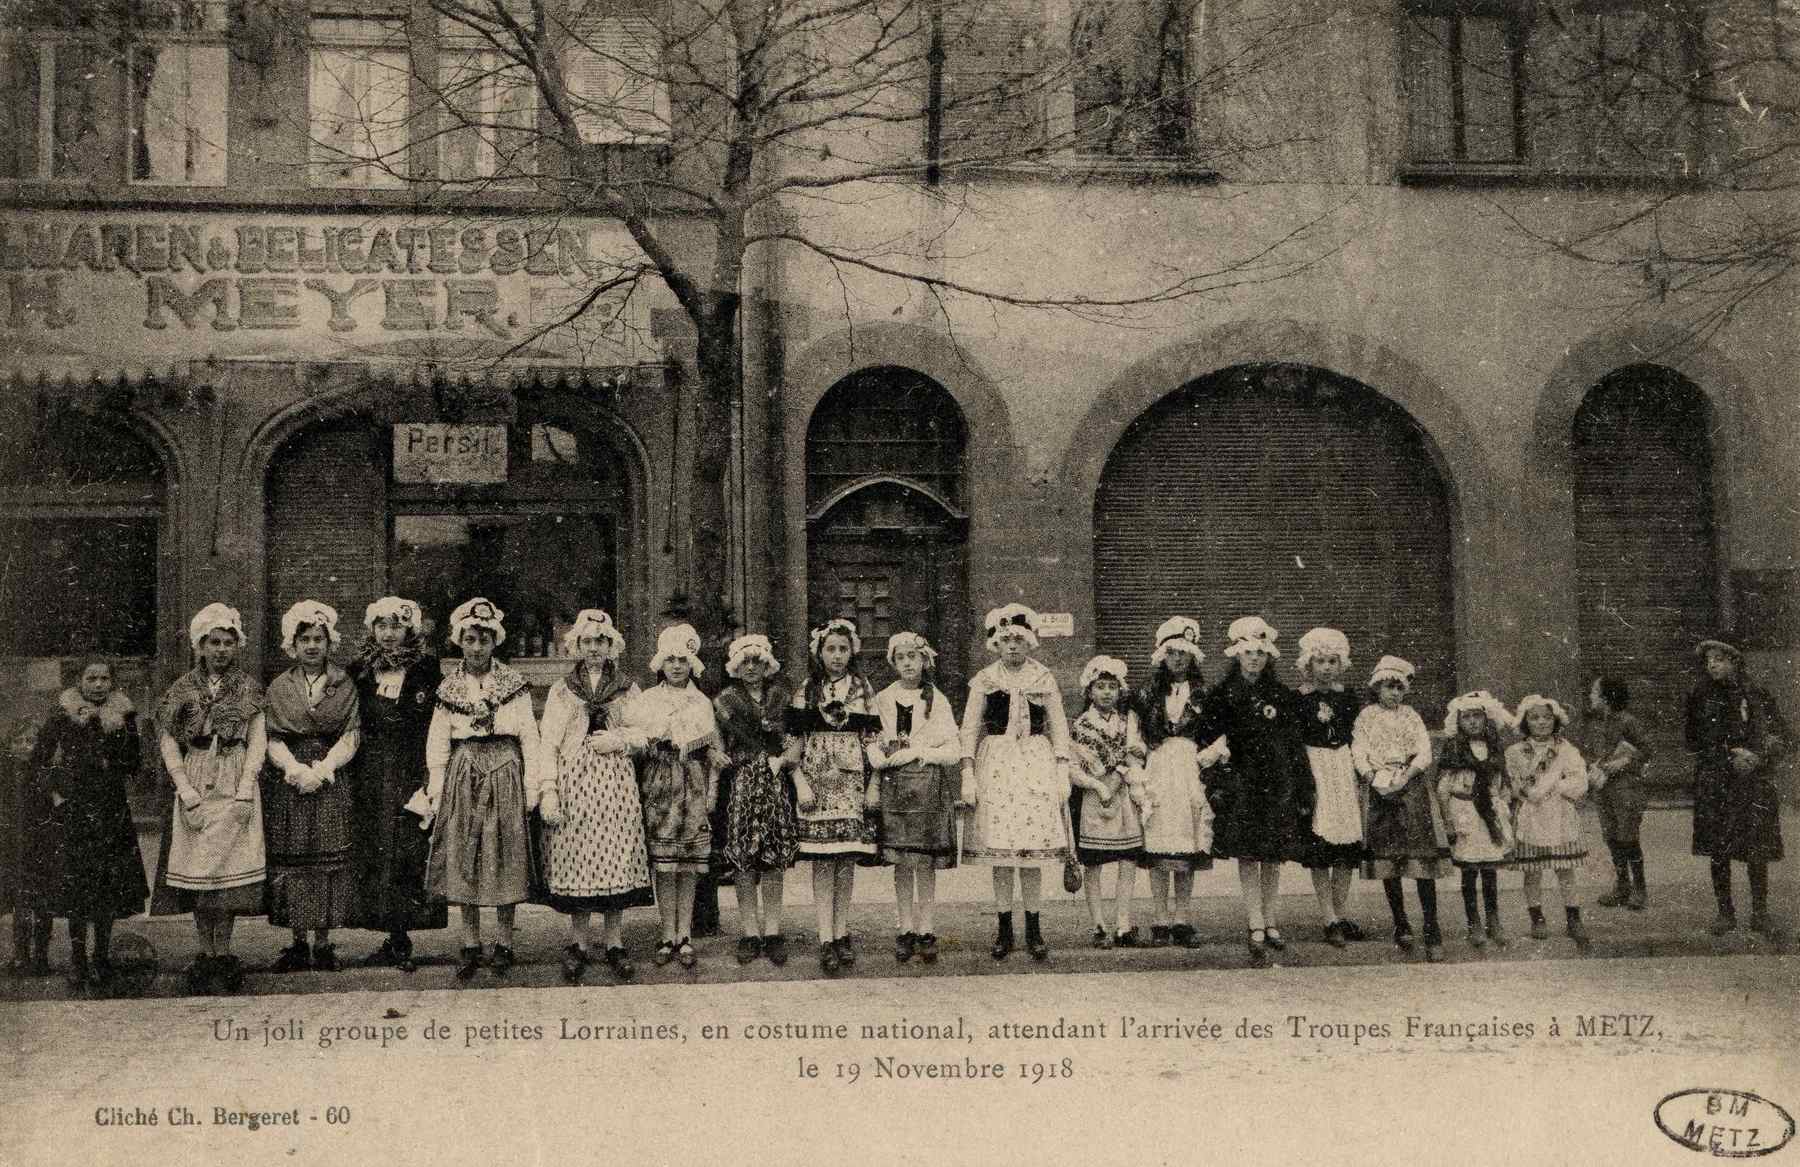 Contenu du Un joli groupe de petites Lorraines, en costume national, attendant l'arrivée des Troupes Françaises à Metz le 19 novembre 1918